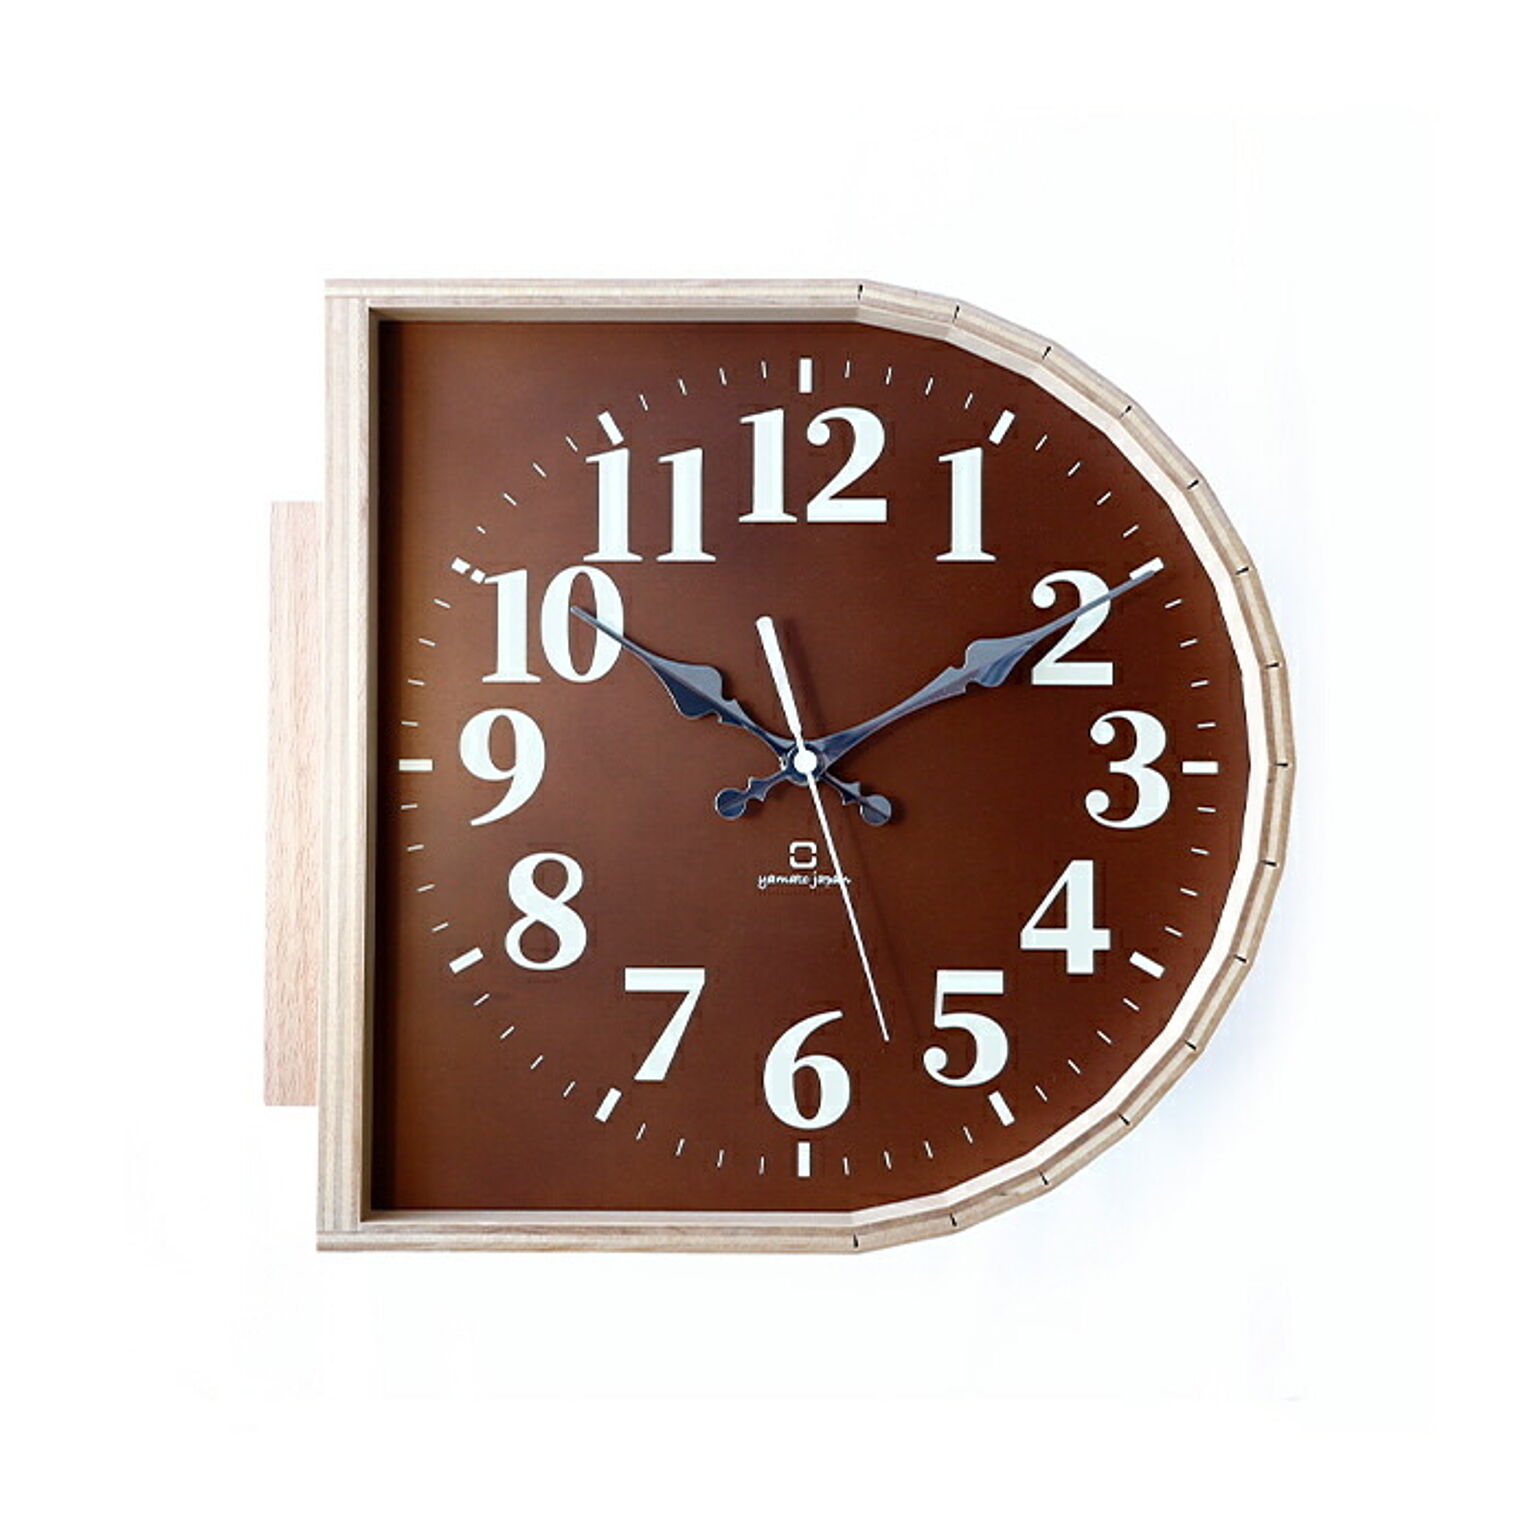 時計 両面時計 掛け時計 北欧 日本製 木製 ダブルフェイスクロック ブラウン アナログ 店舗 職人の手作り ヤマト工芸